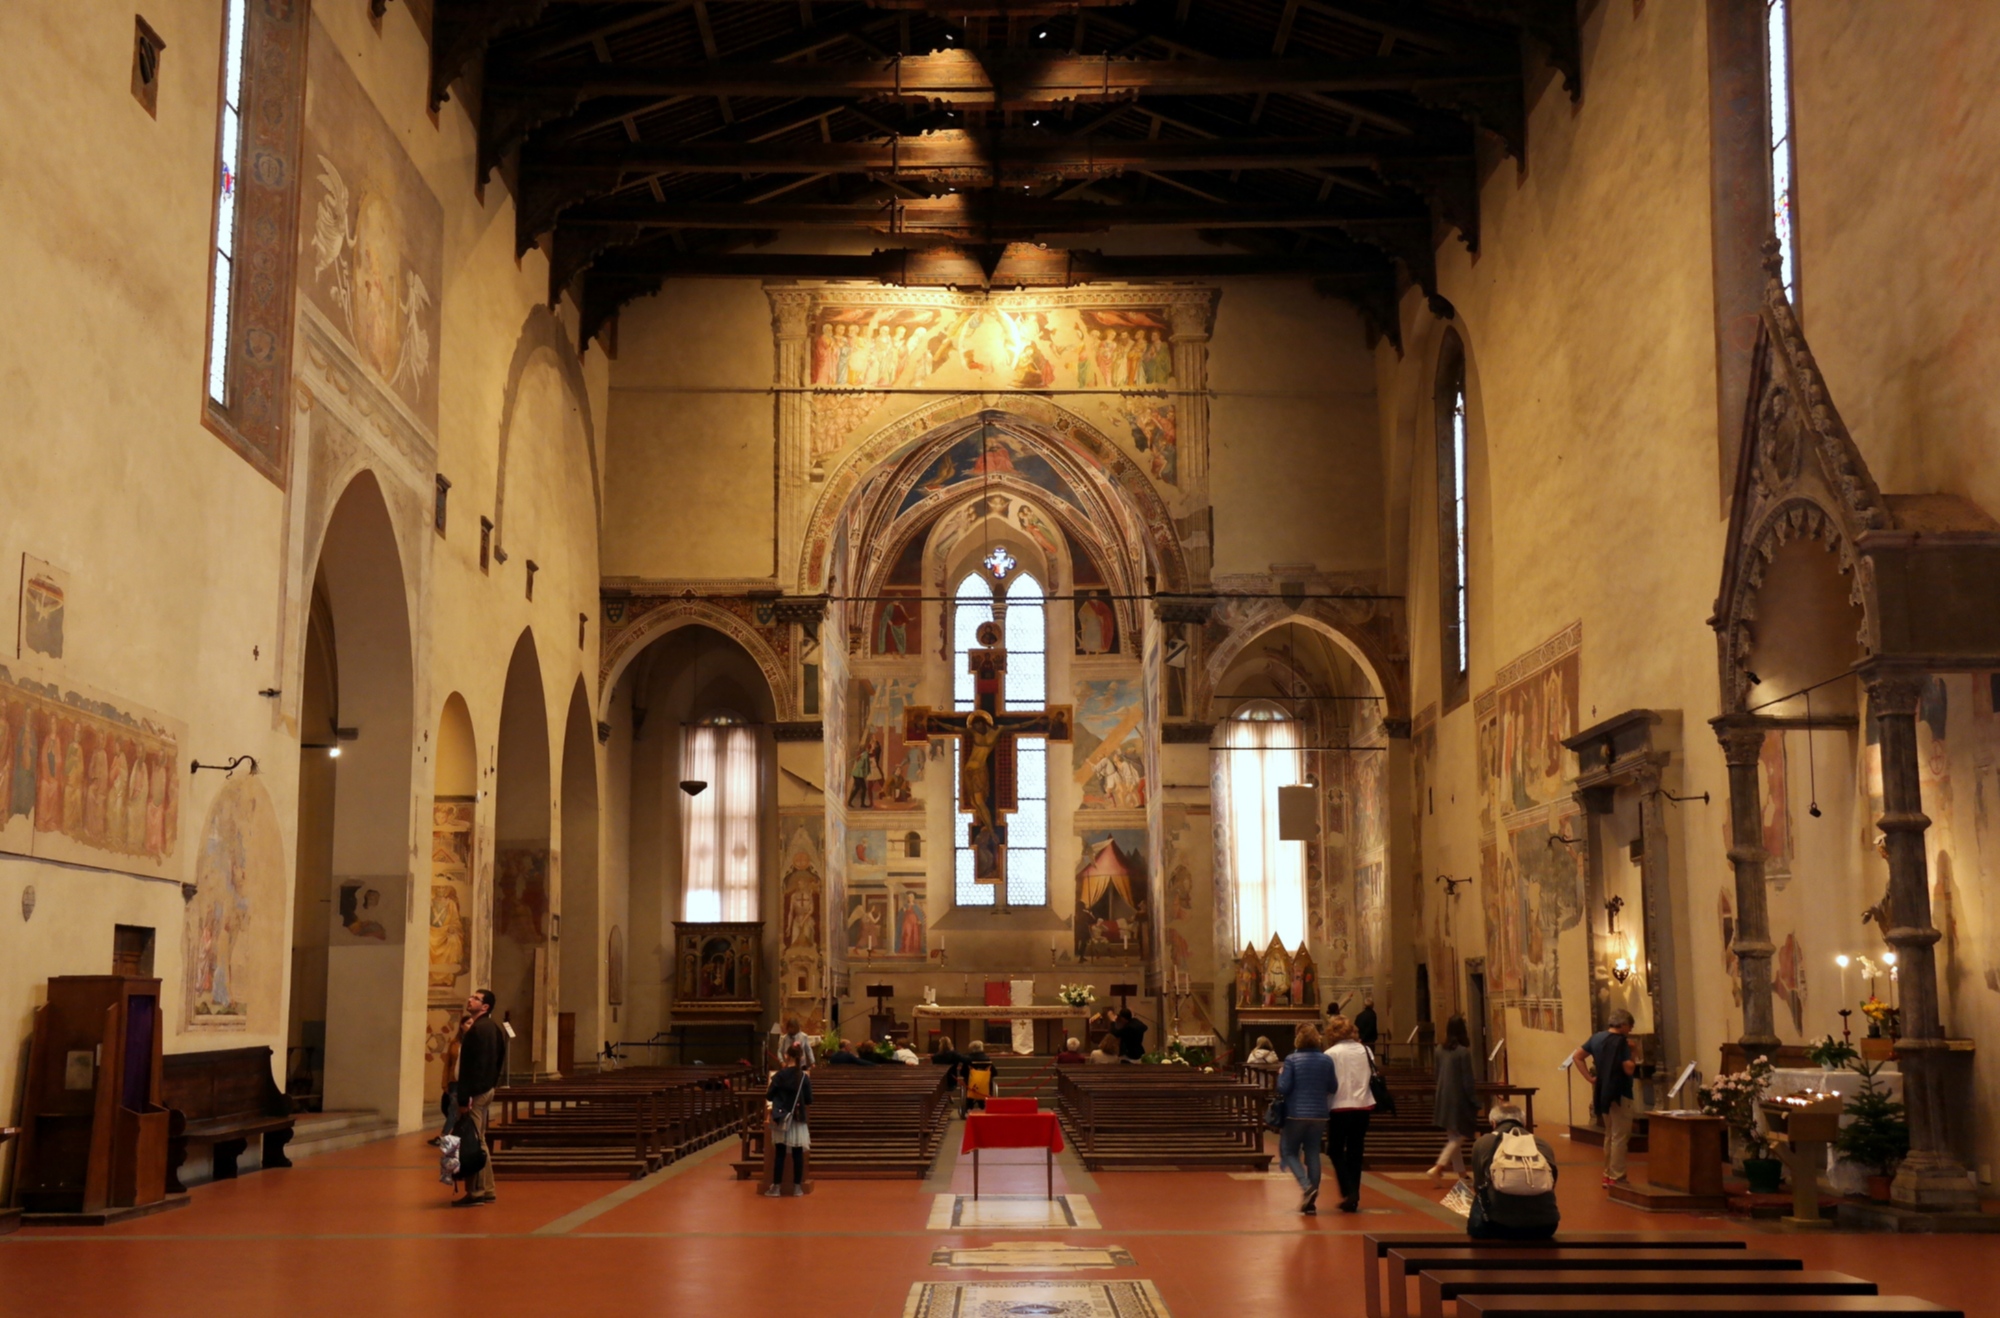 L'interno della Basilica di San Francesco